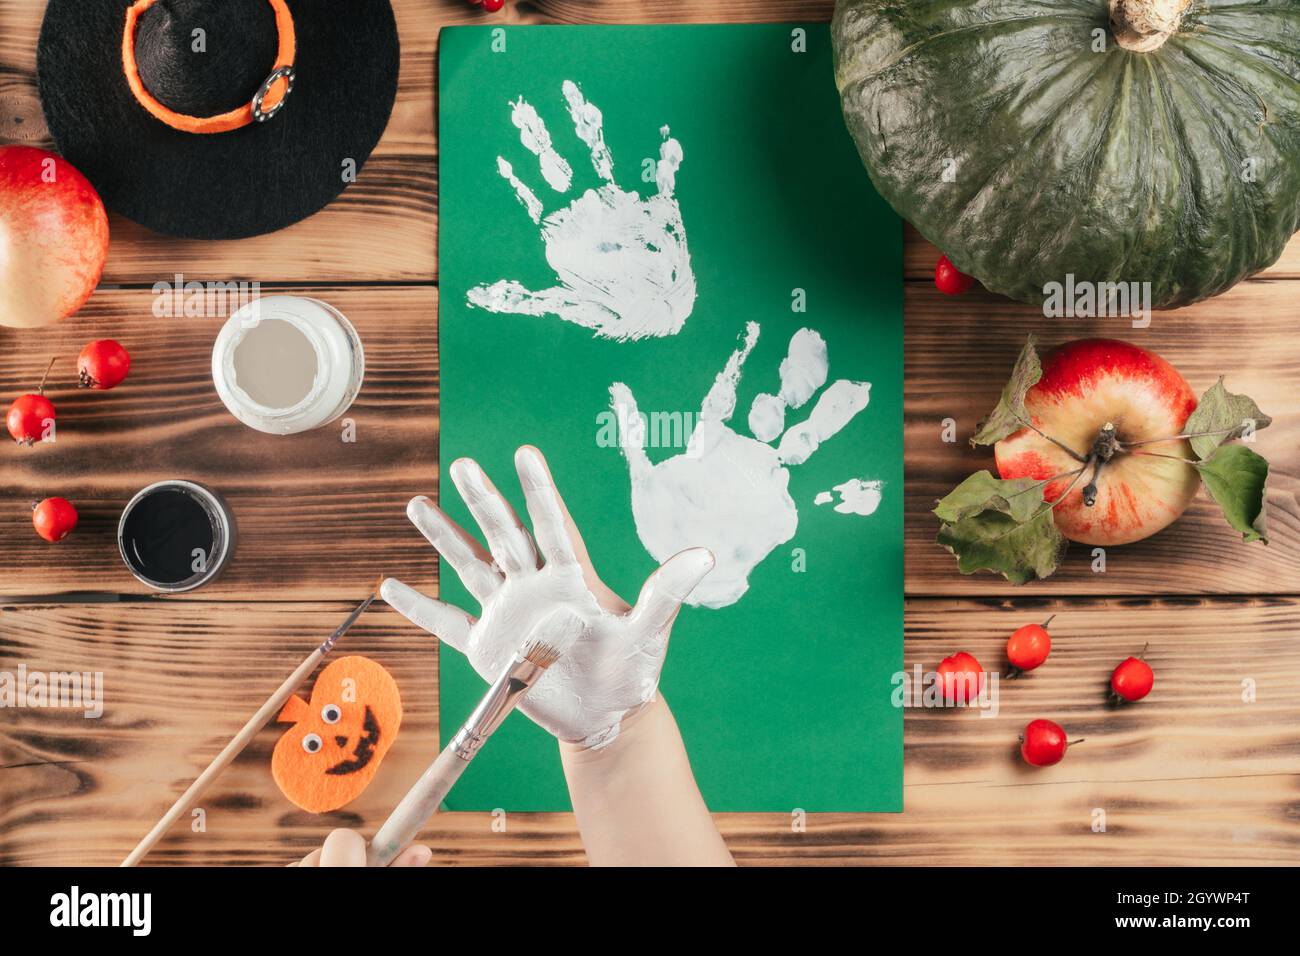 Schritt-für-Schritt Halloween Tutorial Geister Kinder Handprint. Schritt 5: Das Kind trägt mit dem Pinsel weiße Farbe auf die Handfläche auf. Draufsicht Stockfoto